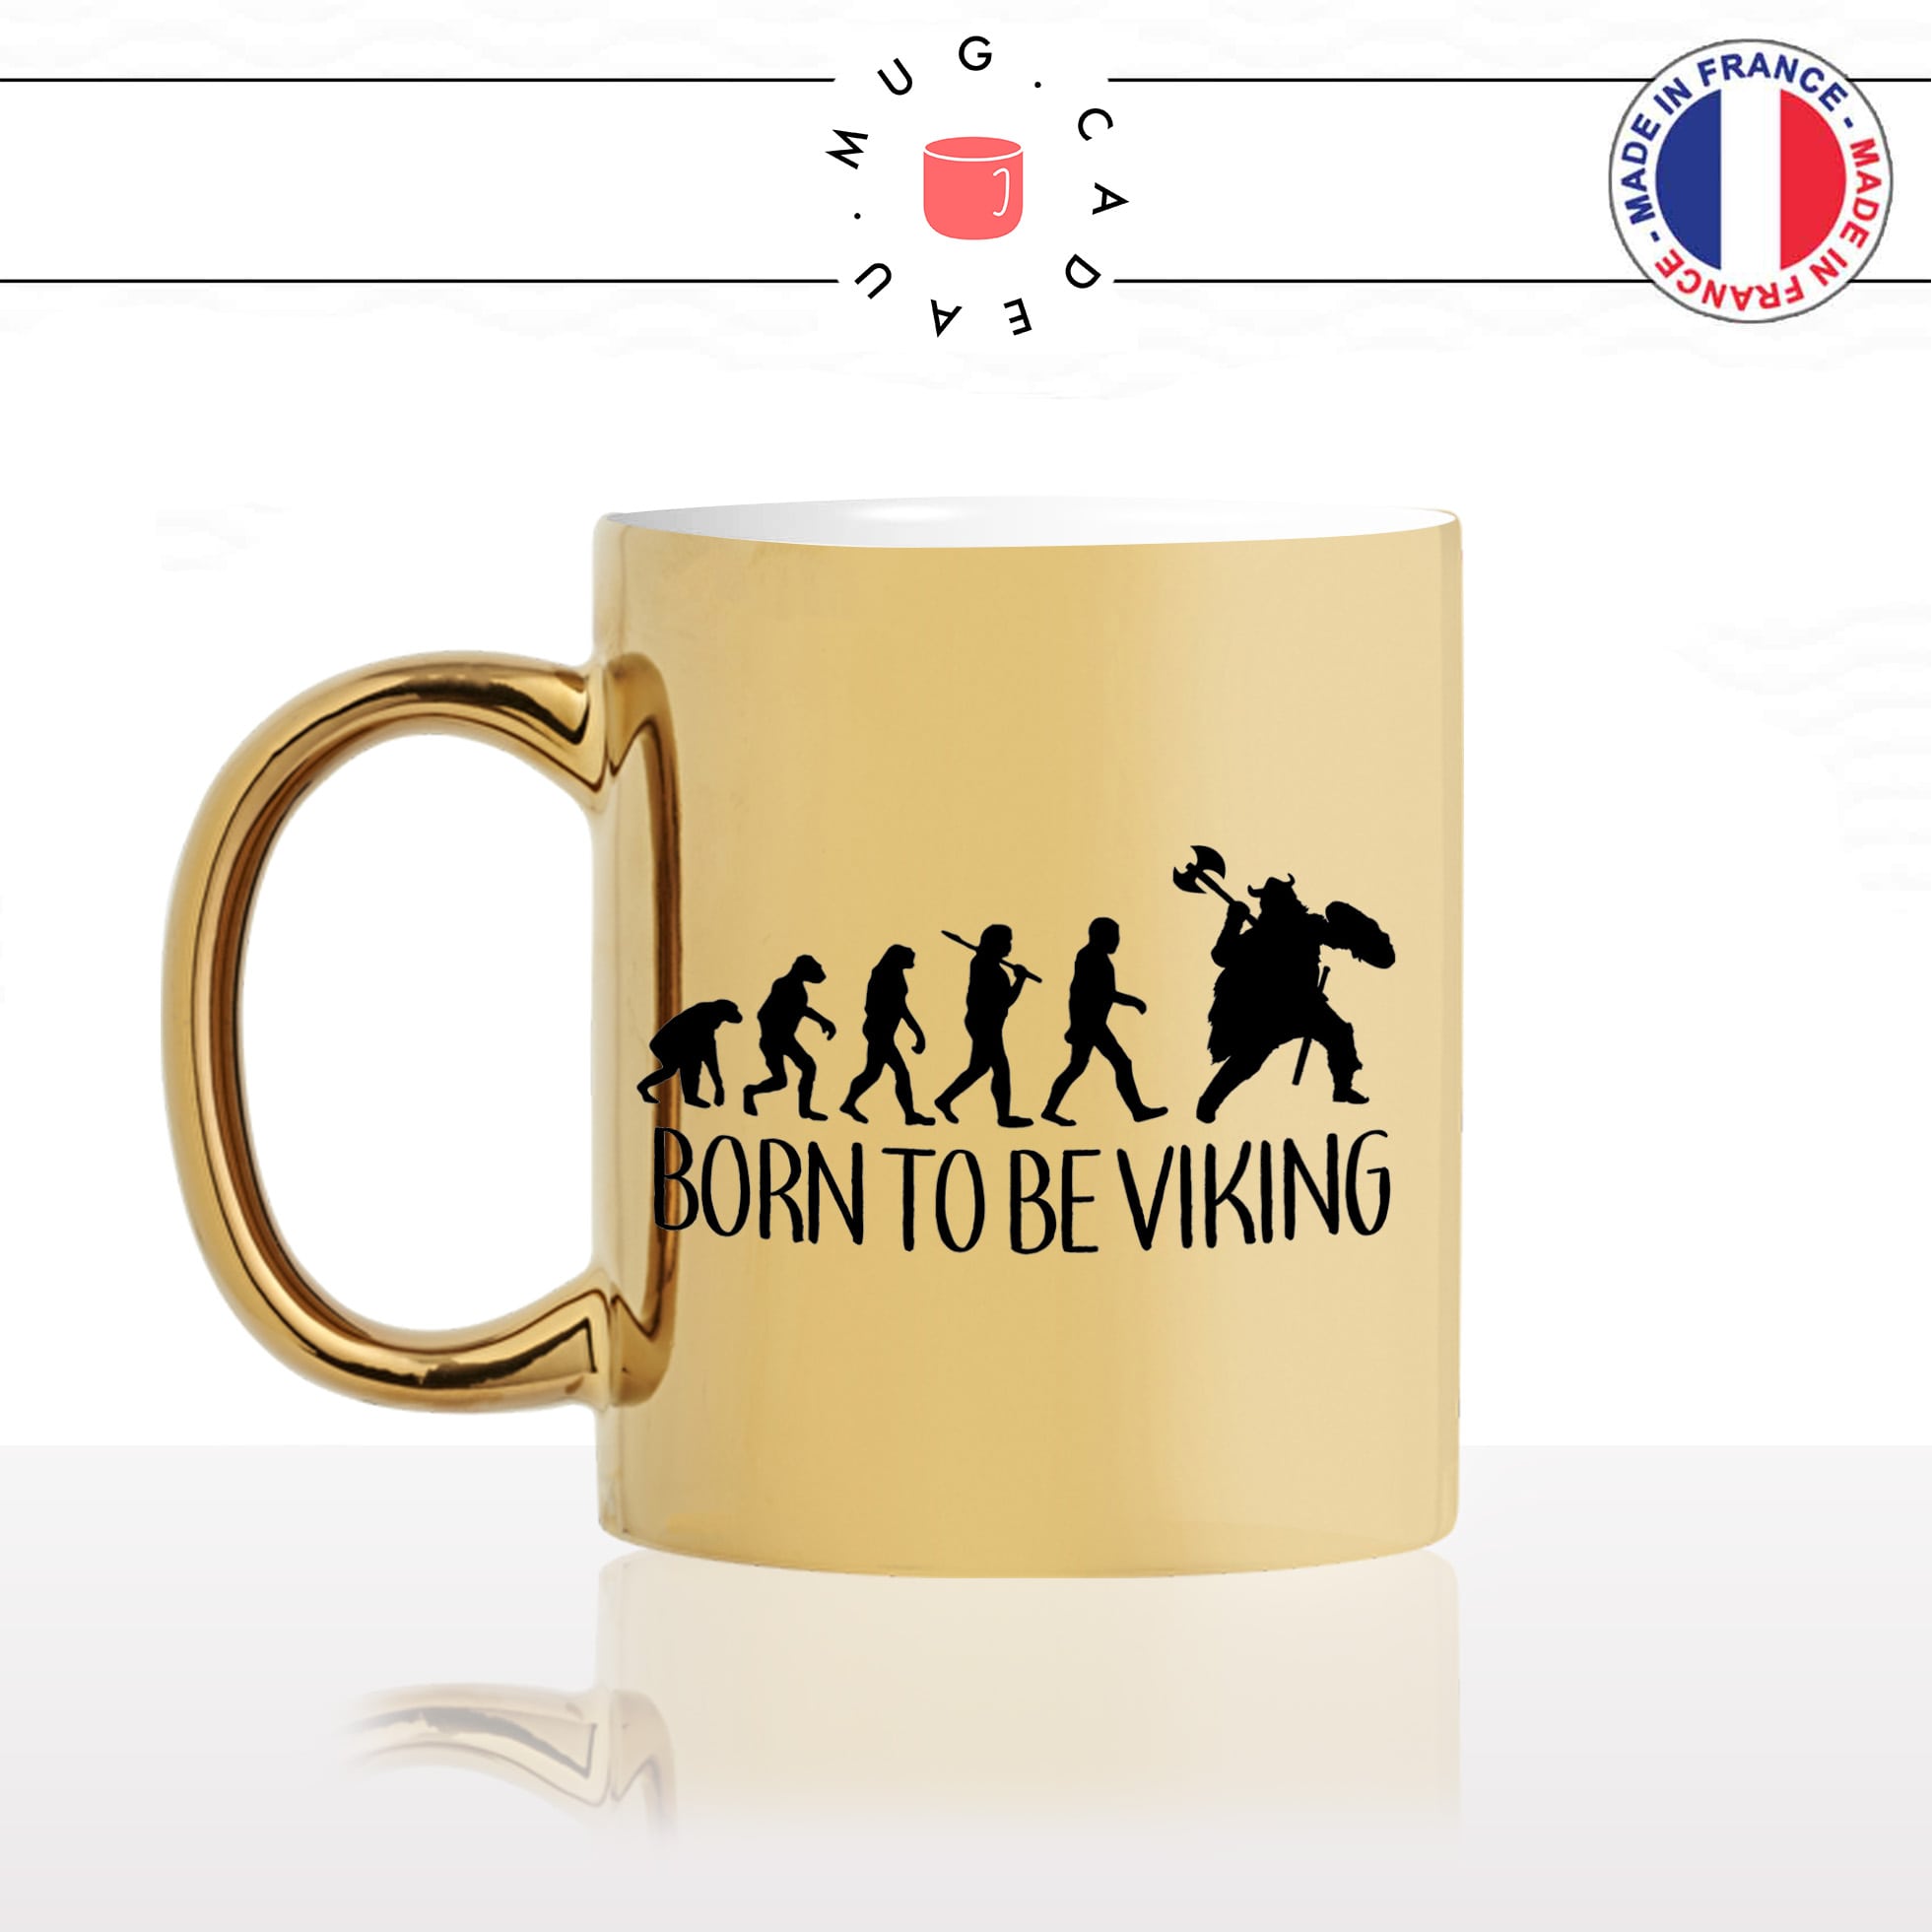 mug-tasse-or-doré-gold-born-to-be-viking-normand-evolution-humaine-homme-histoire-france-cool-idée-cadeau-fun-café-thé-personnalisé-min